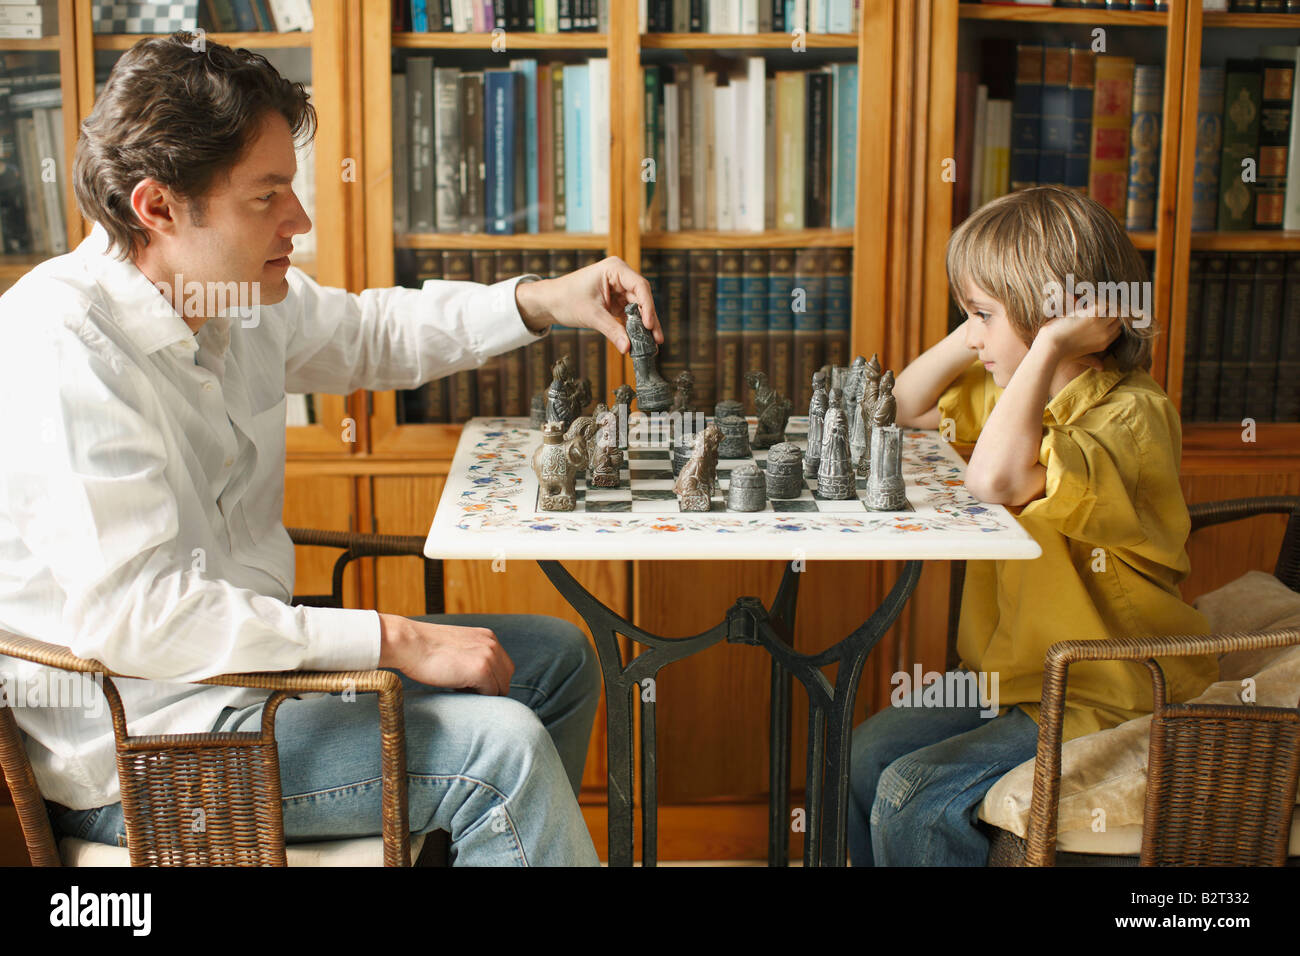 Папа играет в шахматы. Папа с шахматами. Игра в шахматы родители. Дети с родителями играют в шахматы. Родители играют в шахматы с детьми.